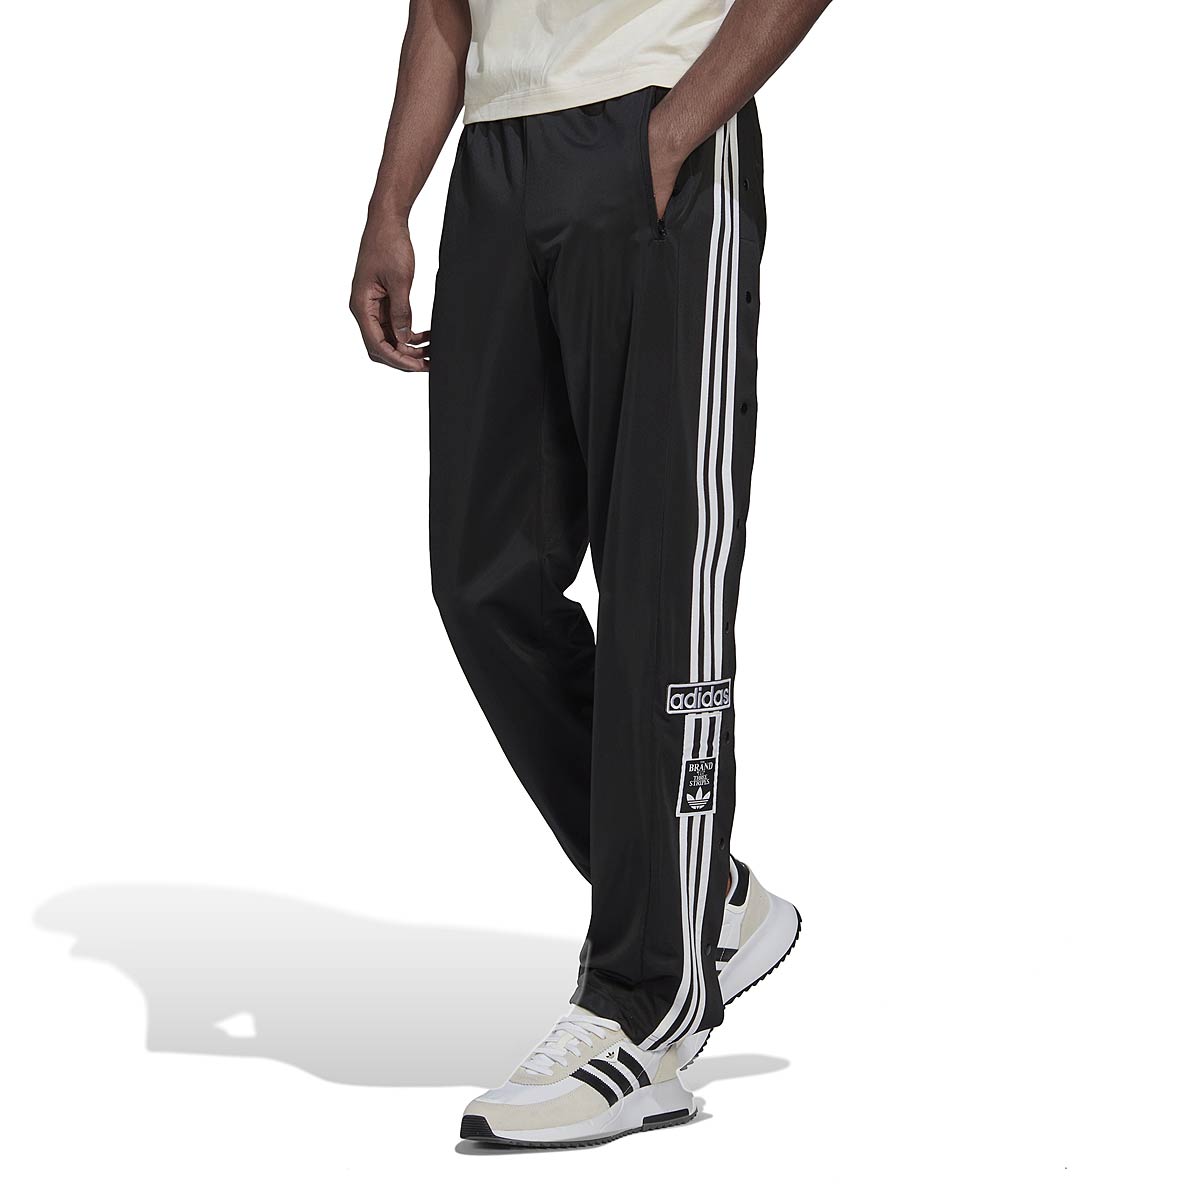 Adidas Originals Adibreak Pant, Black